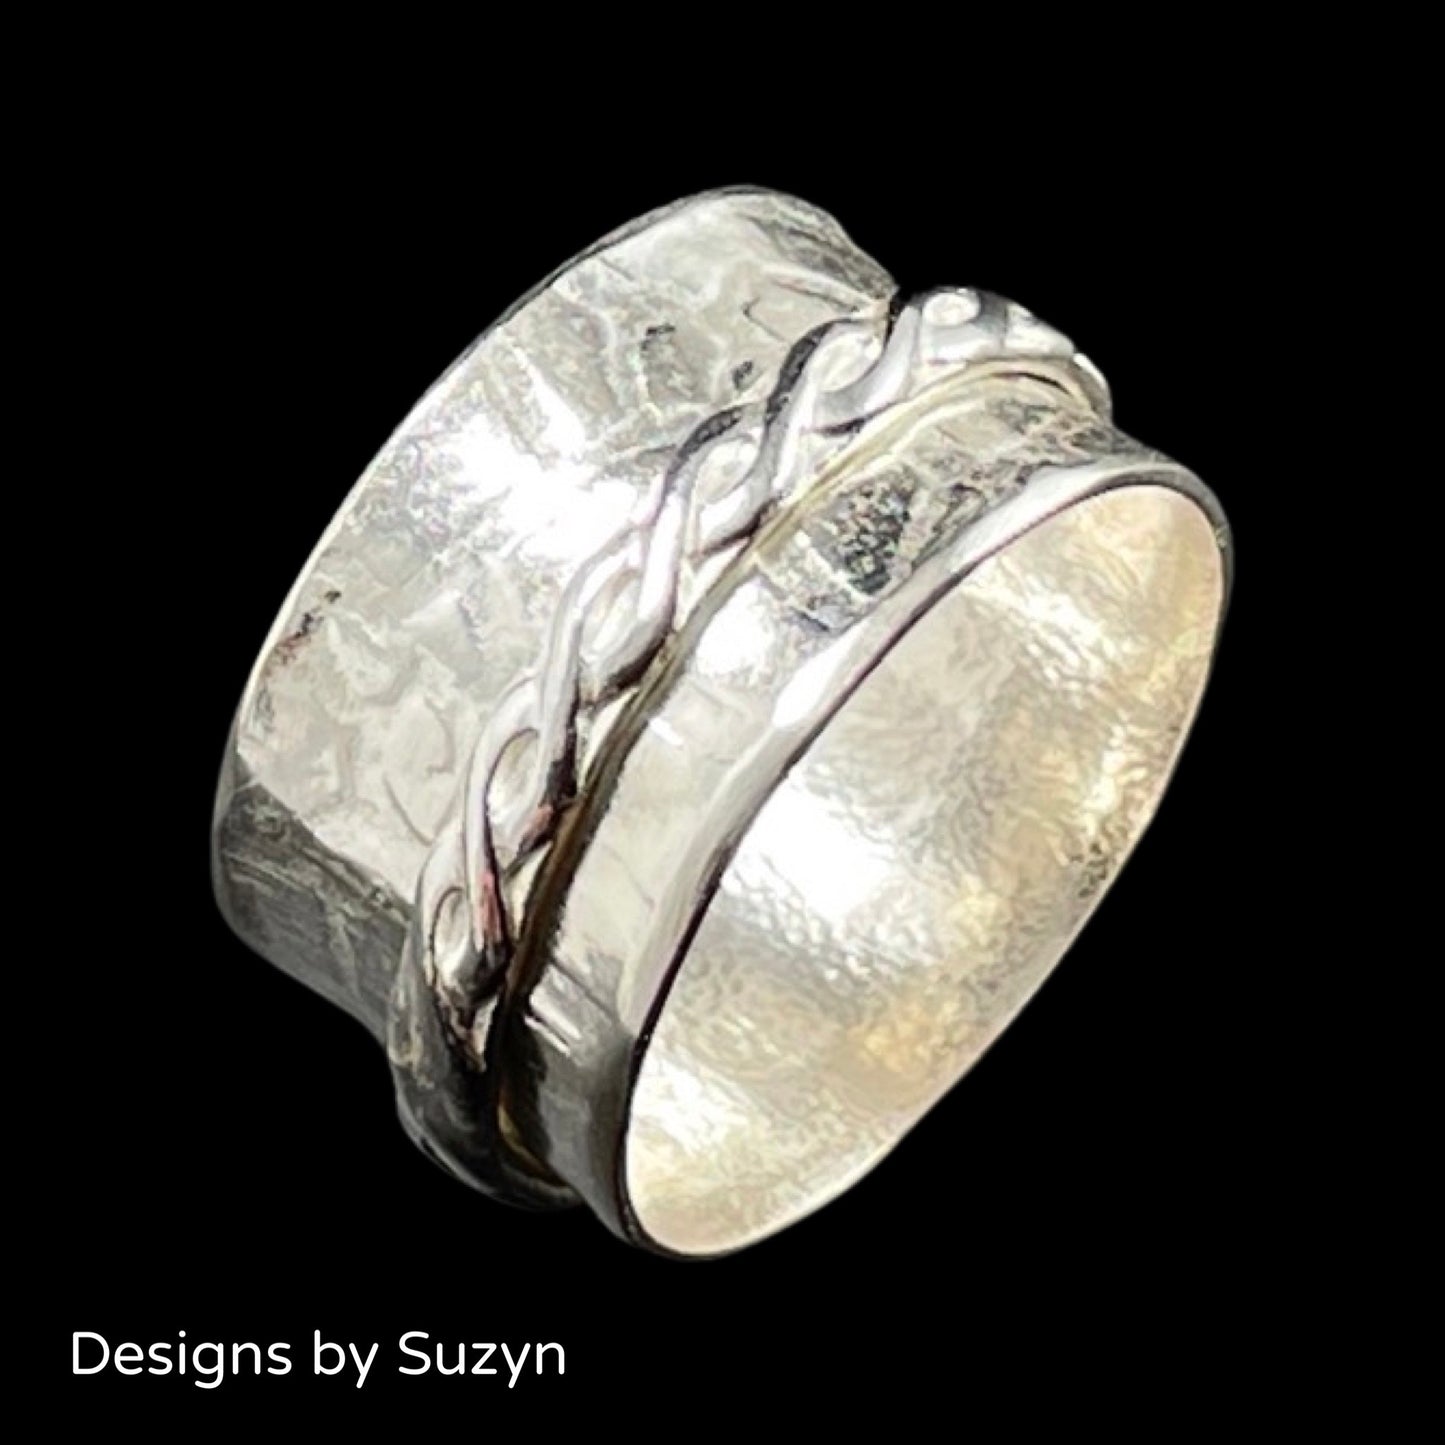 Size 10.5 meditation ring, spinner ring, fidget ring